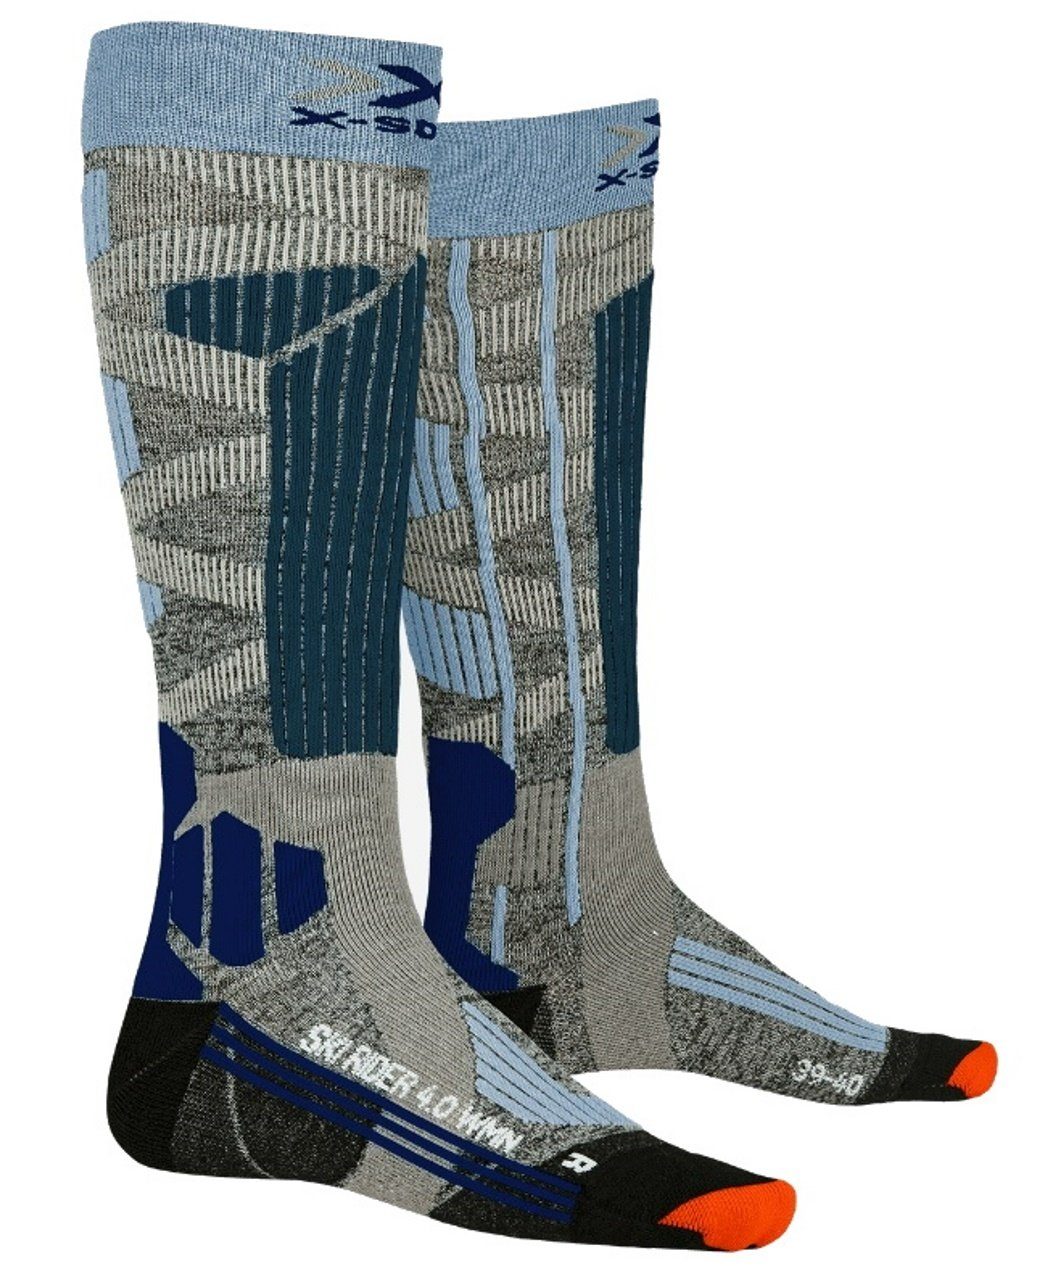 Preislimitierter Sonderverkauf X-Socks Skisocken